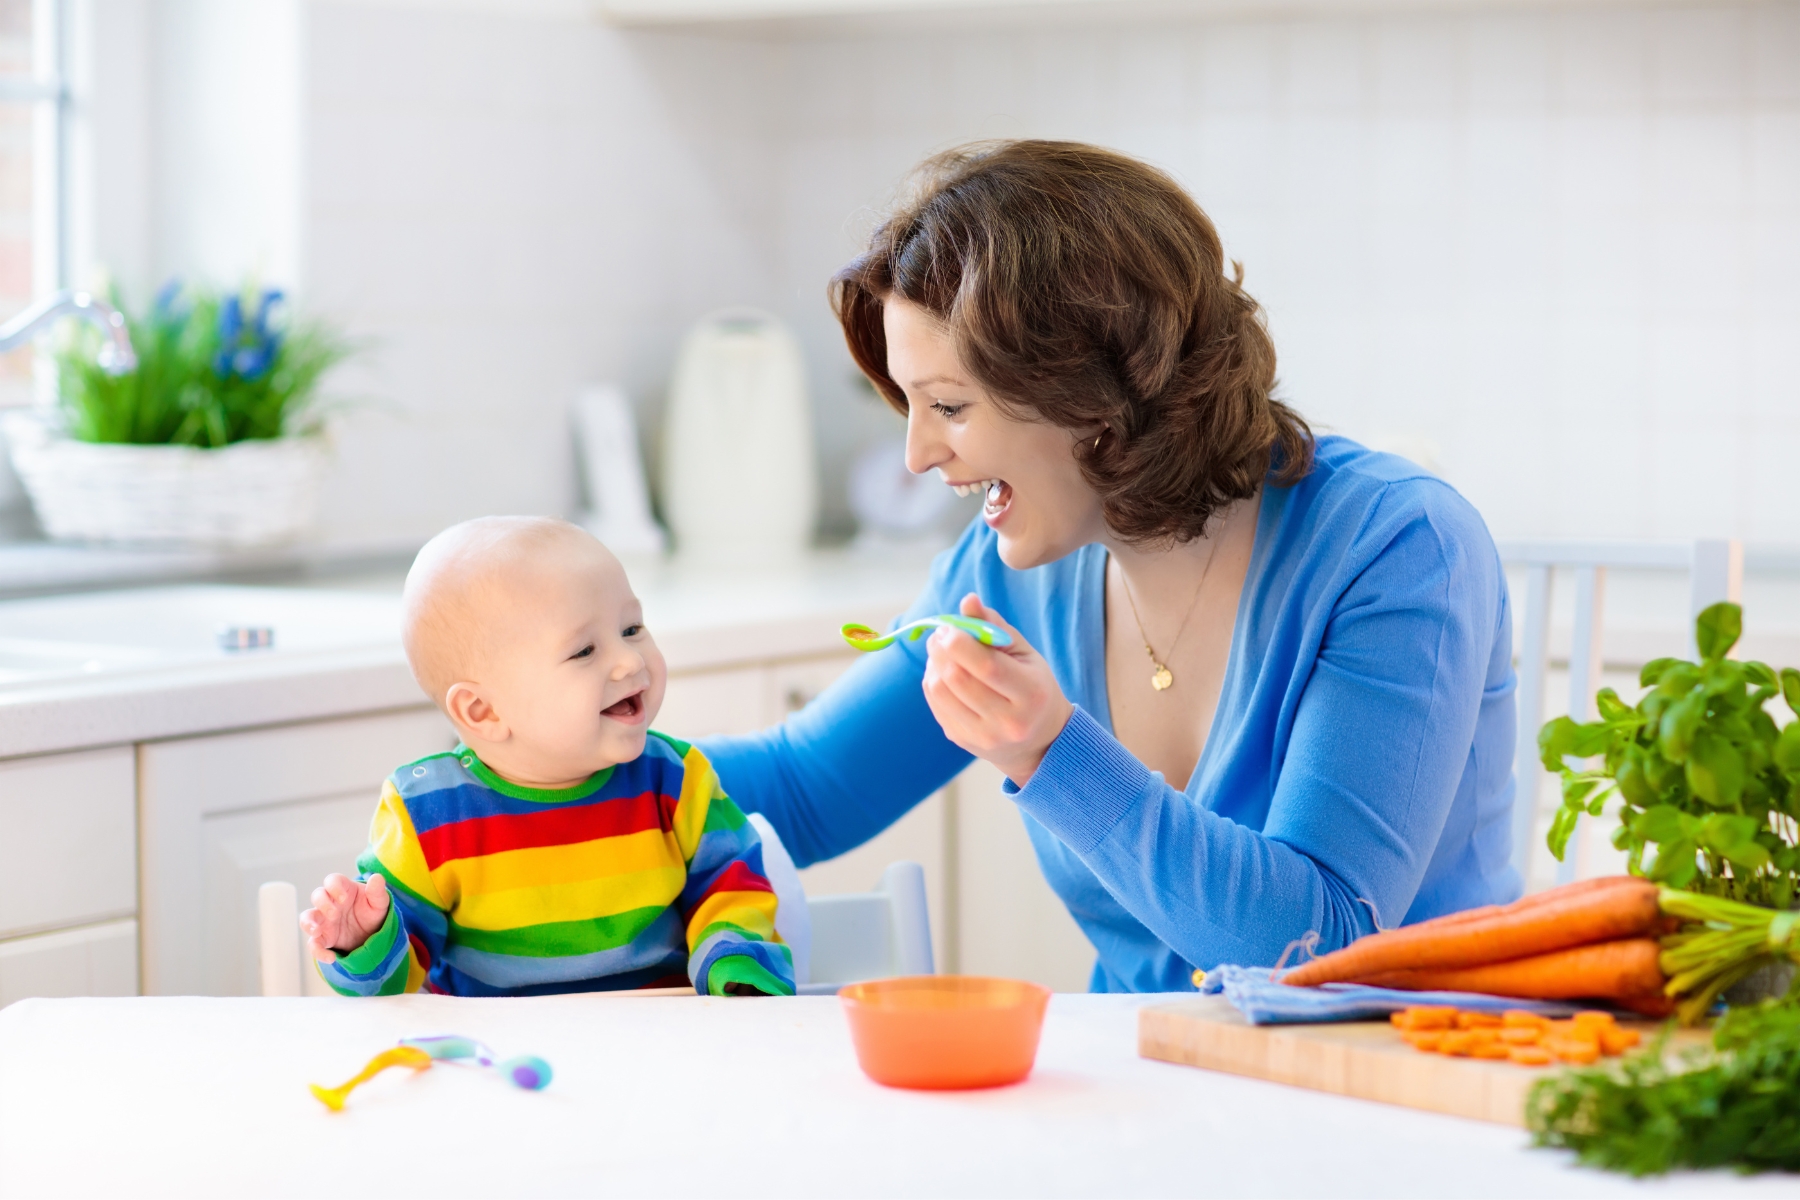 Descubra como uma alimentação saudável é fundamental para o desenvolvimento do seu bebê e aprenda dicas práticas para nutrição infantil.